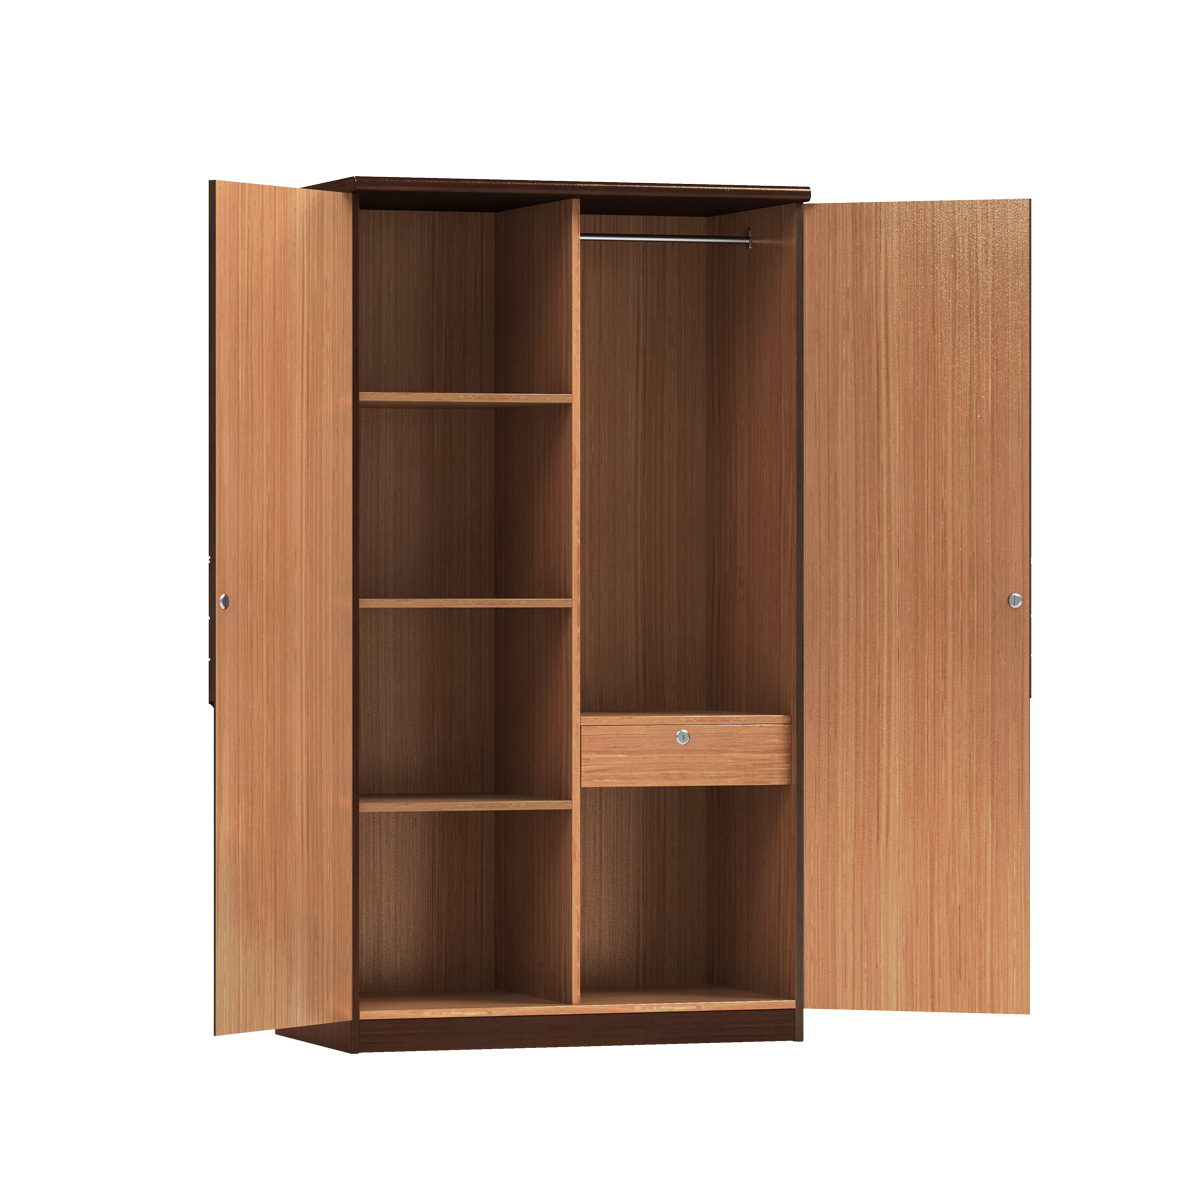 Wooden almirah/Cupboard I CBH-357 (2 DOOR)